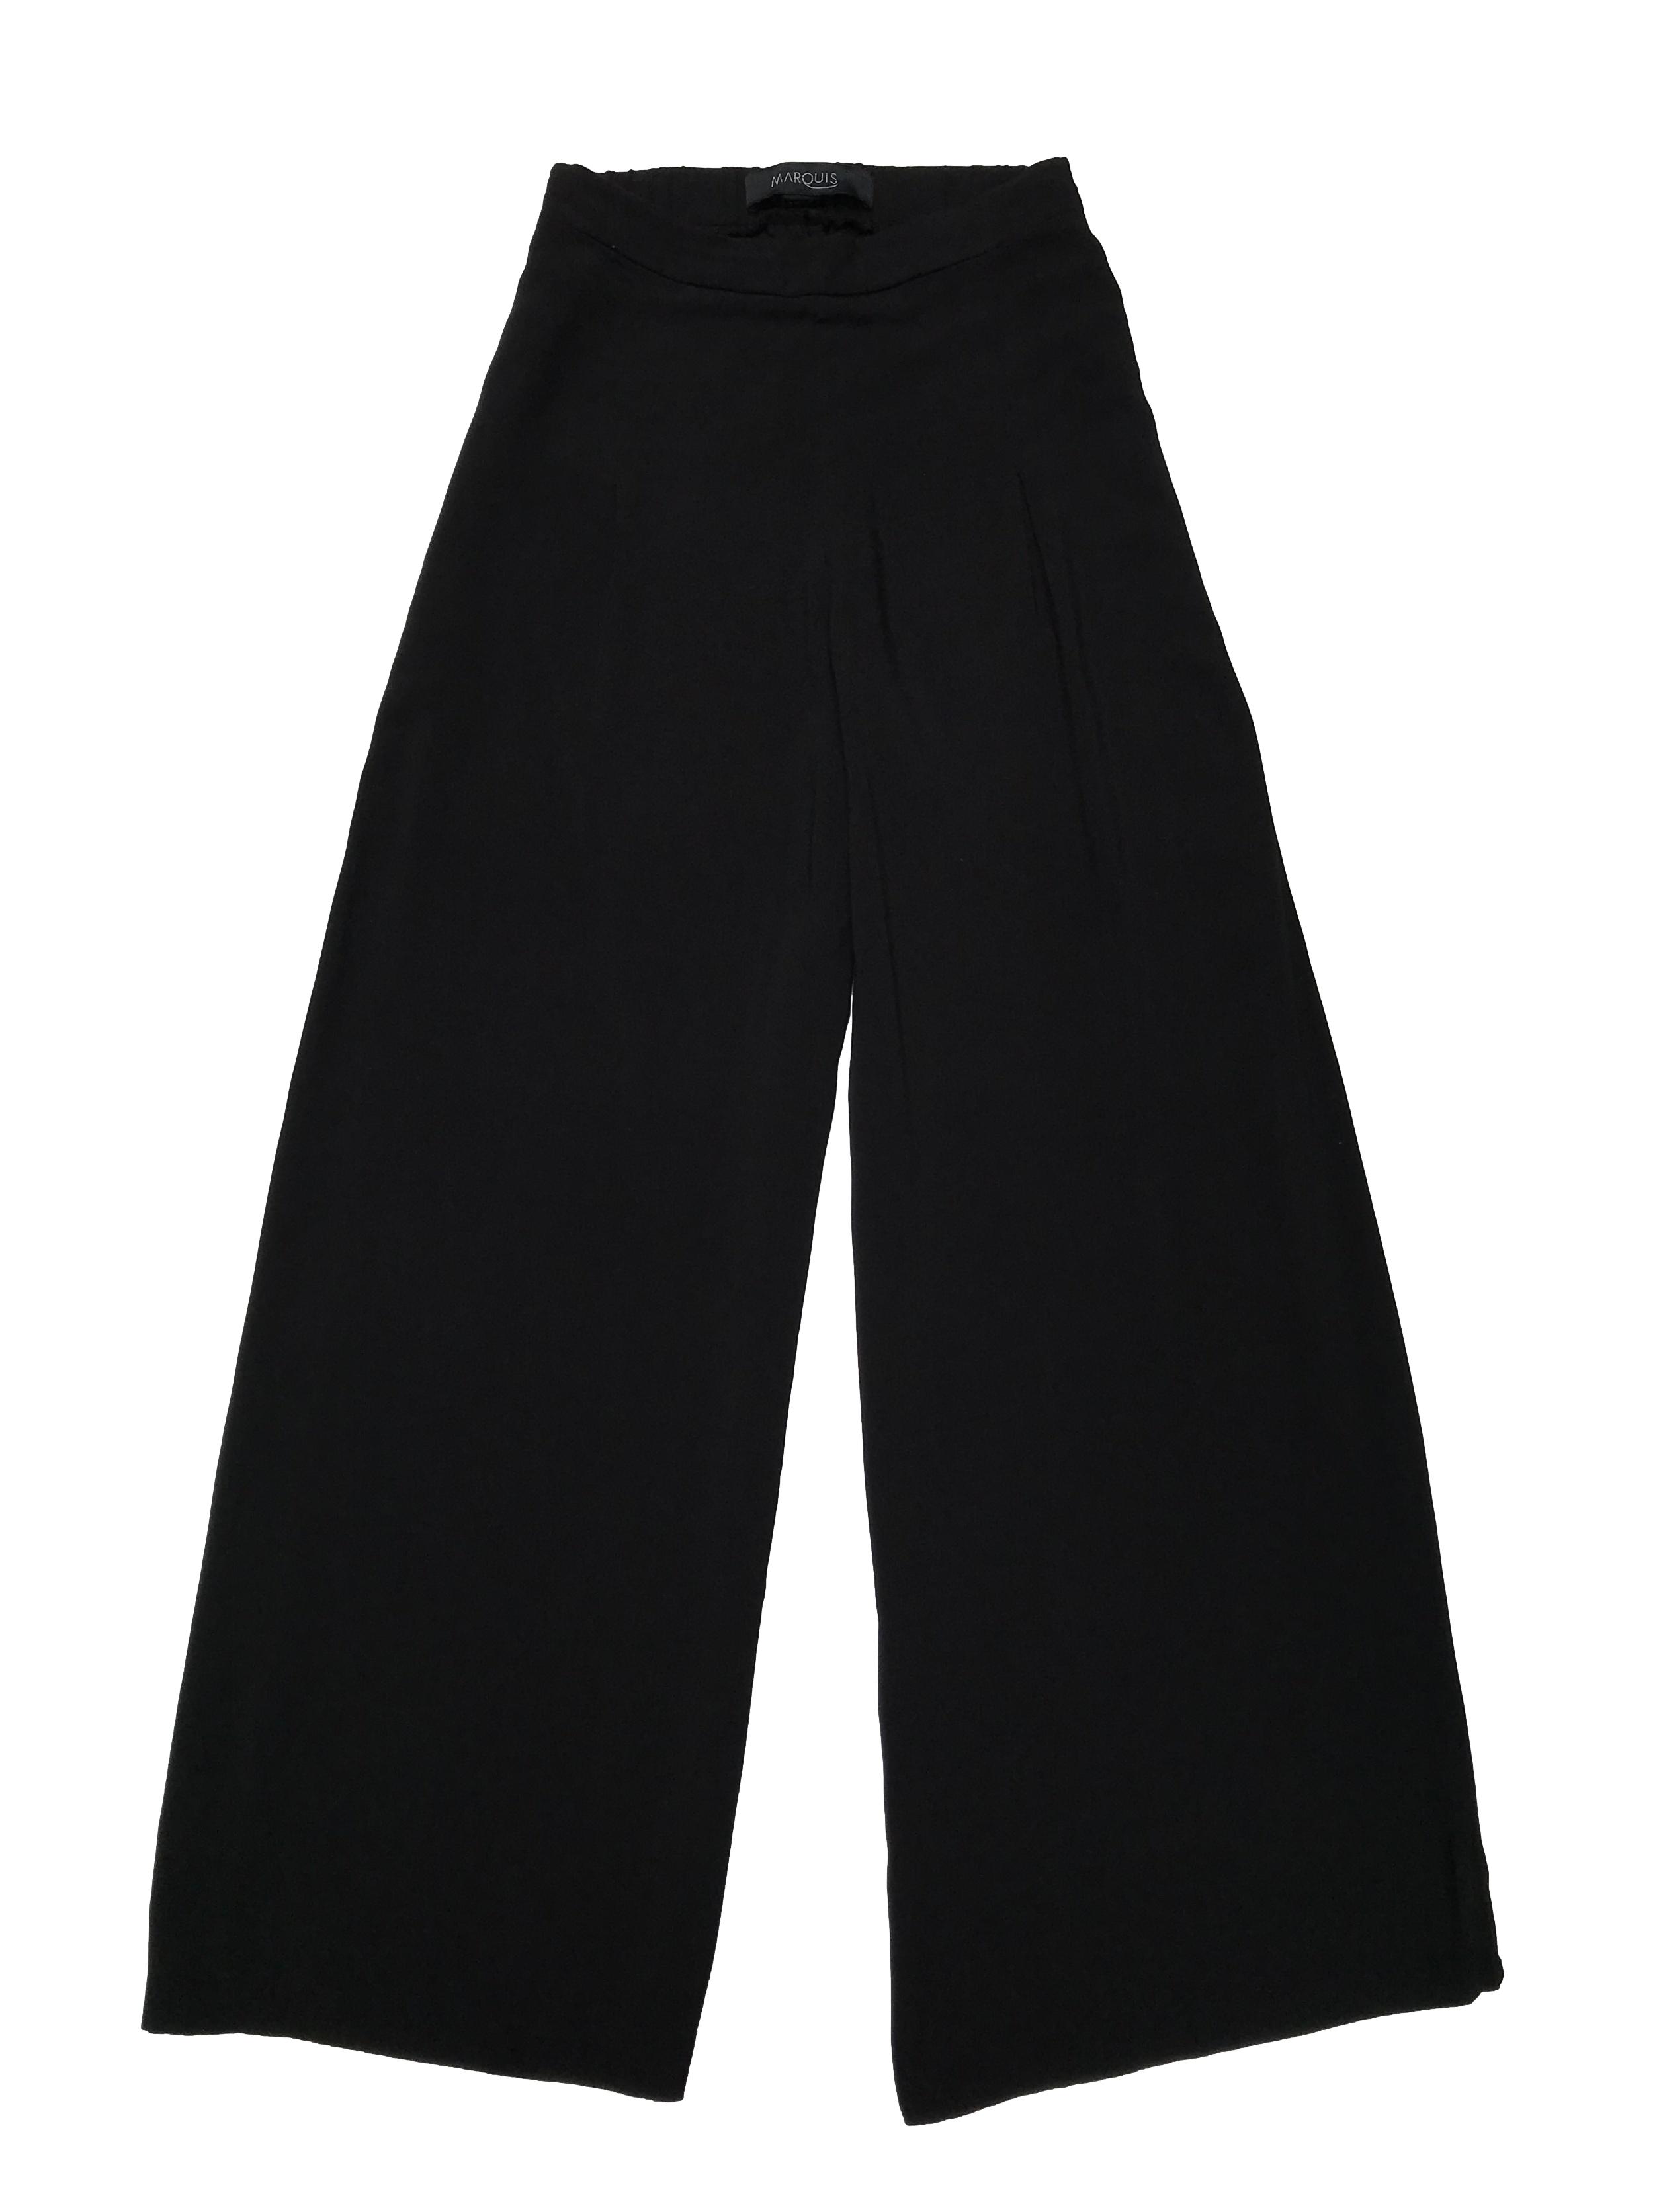 Pantalón palazzo Marquis, 100% viscosa negra, cintura con elástico posterior. Cintura 66cm sin estirar Largo 102cm